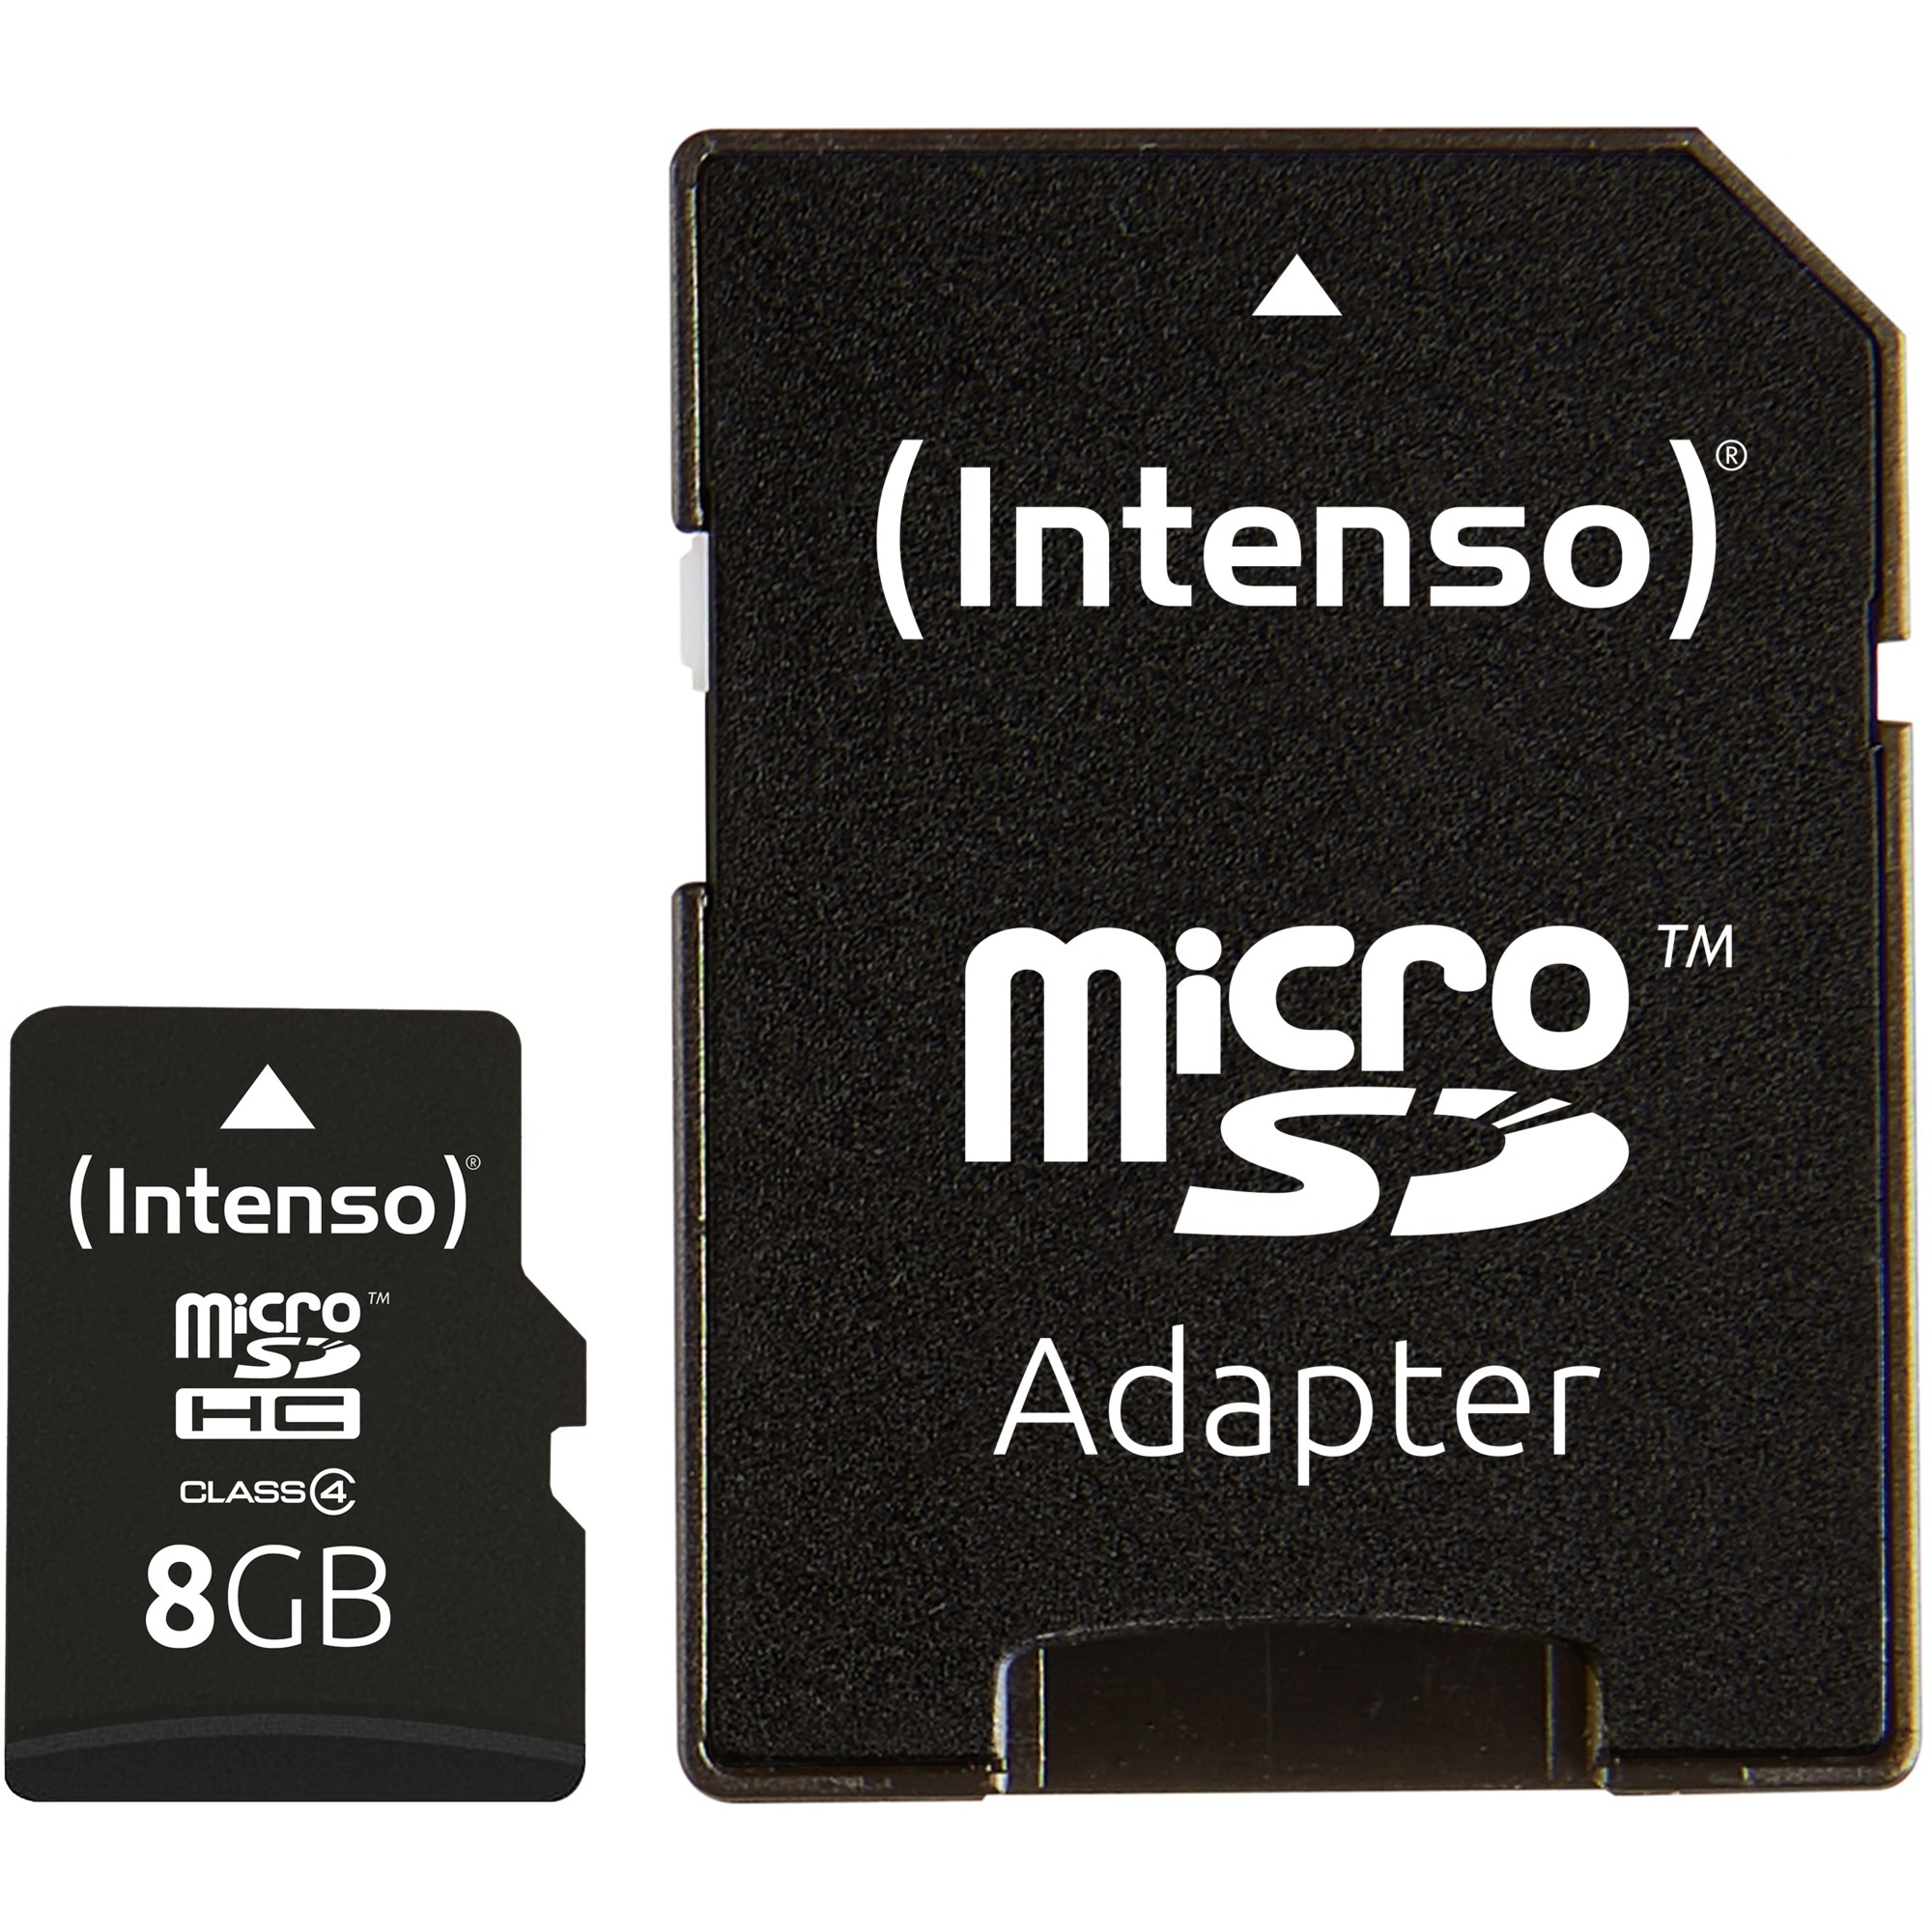 Image of Alternate - microSDHC 8 GB, Speicherkarte online einkaufen bei Alternate